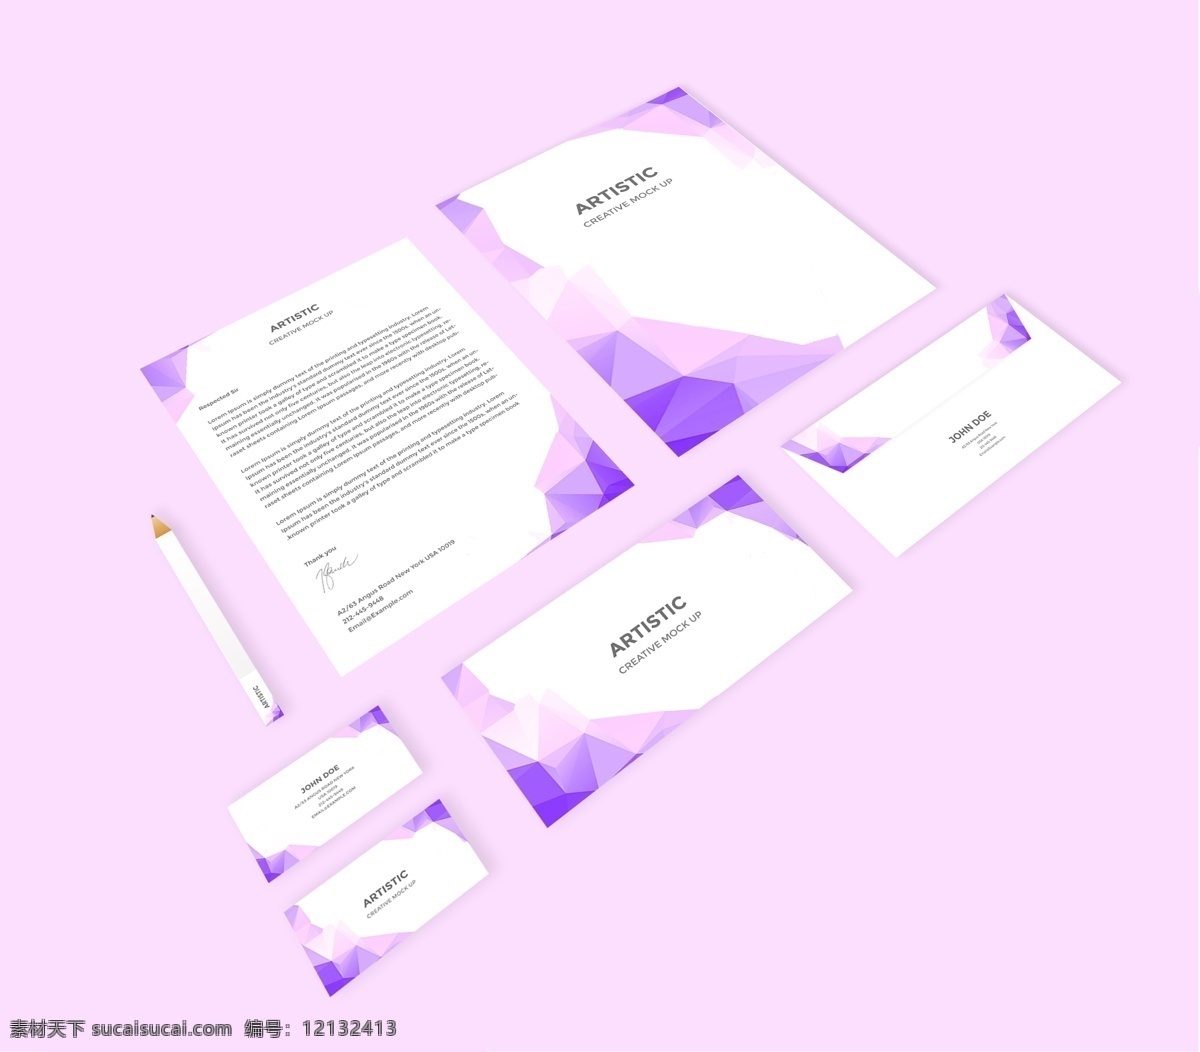 紫色 唯美 企业 品牌 形象 vi 样机 企业形象 信纸 笔 信封 名片 样机模板 vi样机 企业vi样机 文具